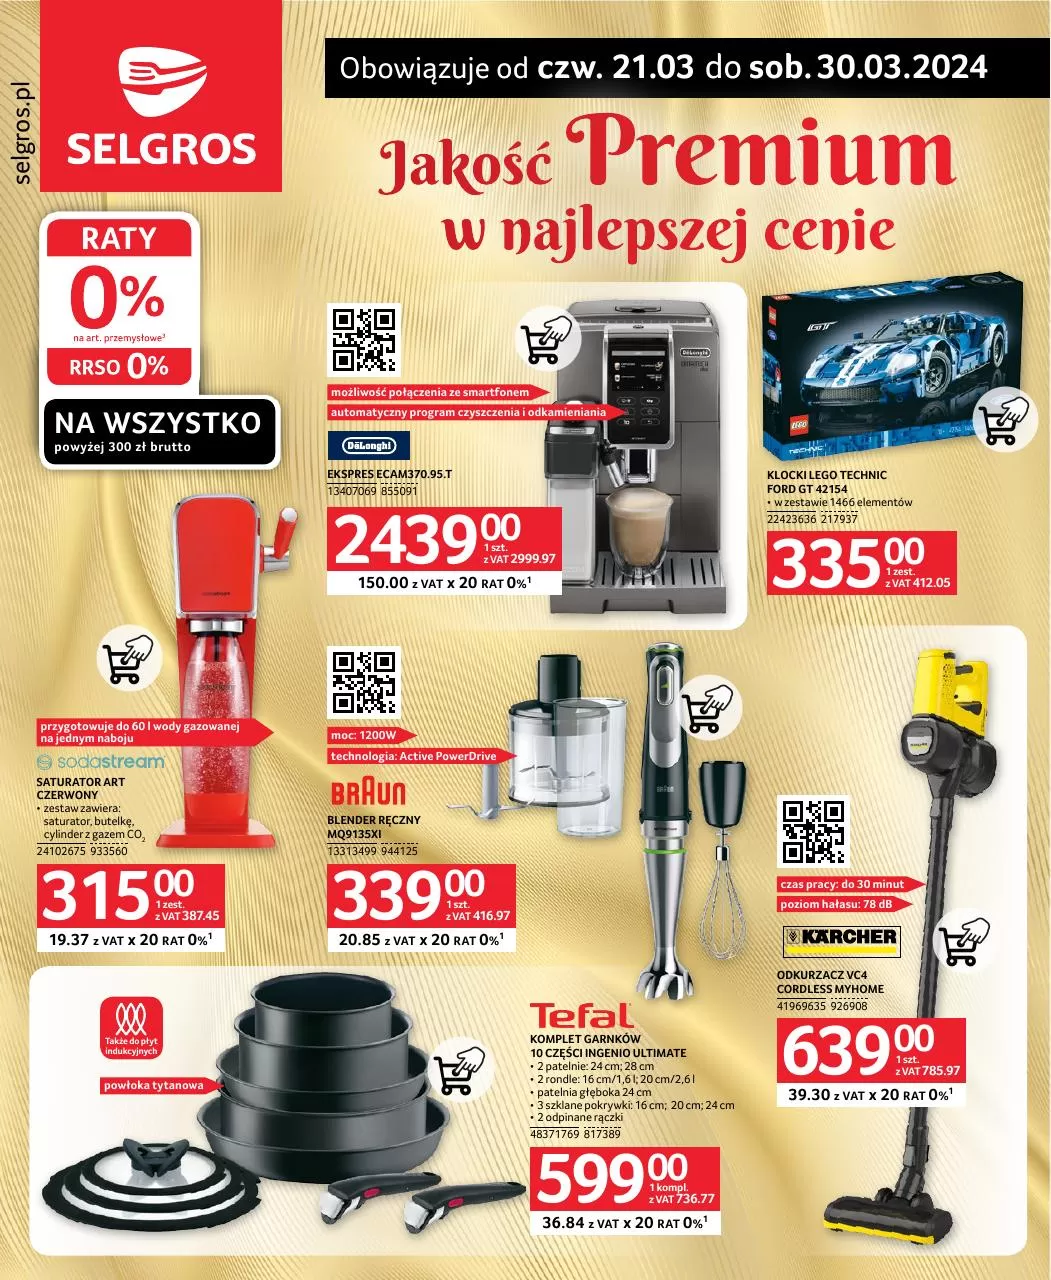 Ulotka gazetka promocyjna: Jakość premium w najlepszej cenie ze sklepu Selgros dostępna od 21.03 do 30.03